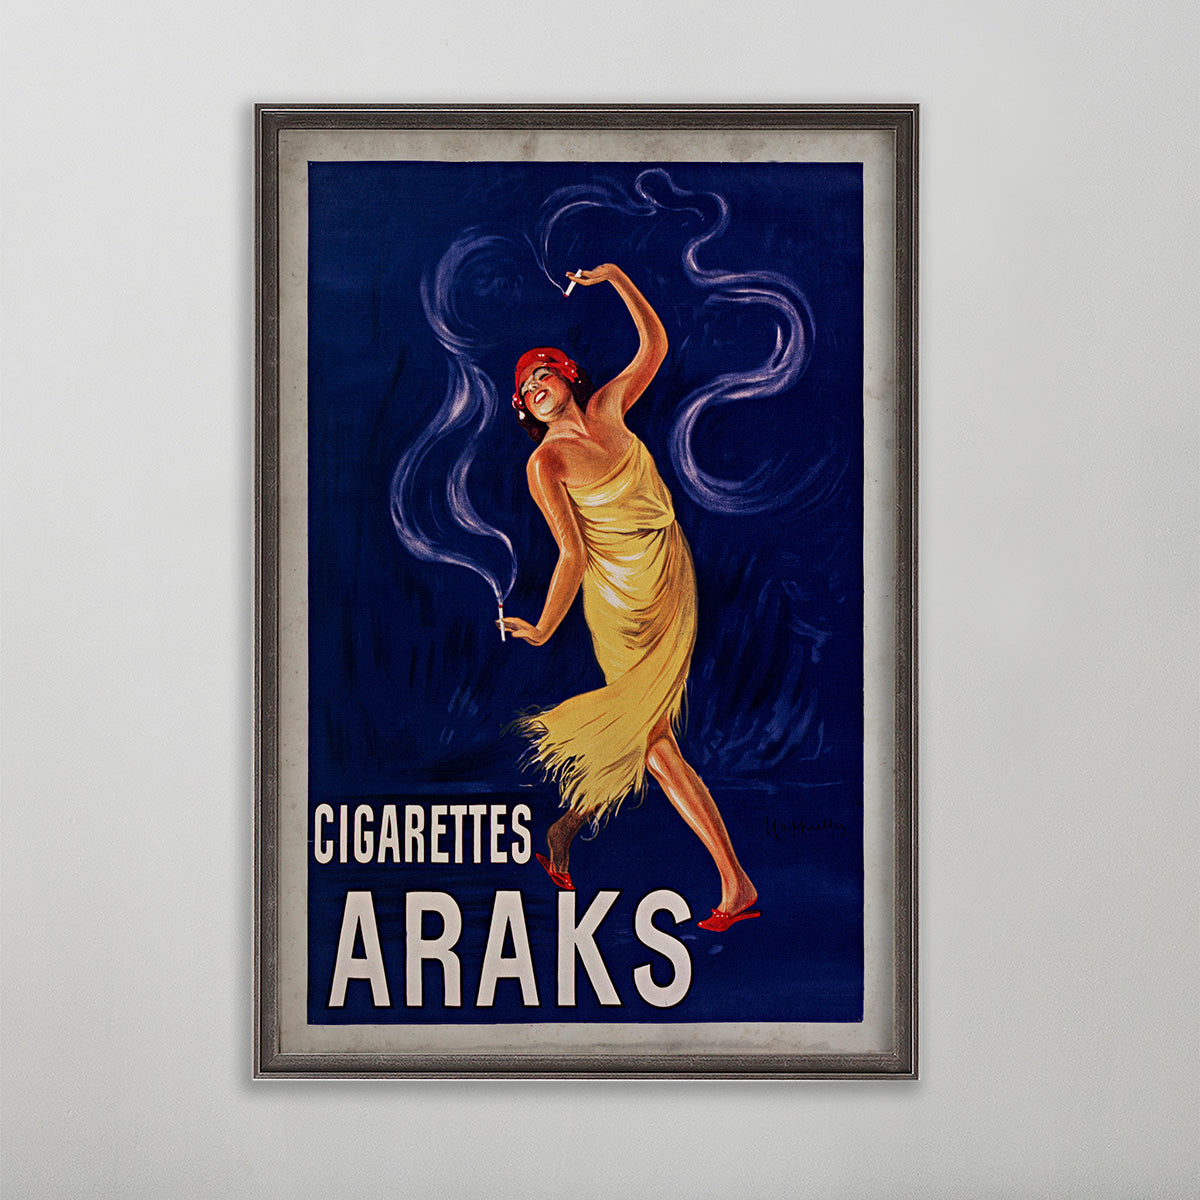 Cigarettes Araks poster wall art by leonetto cappiello. Girl dancing smoking cigarette.